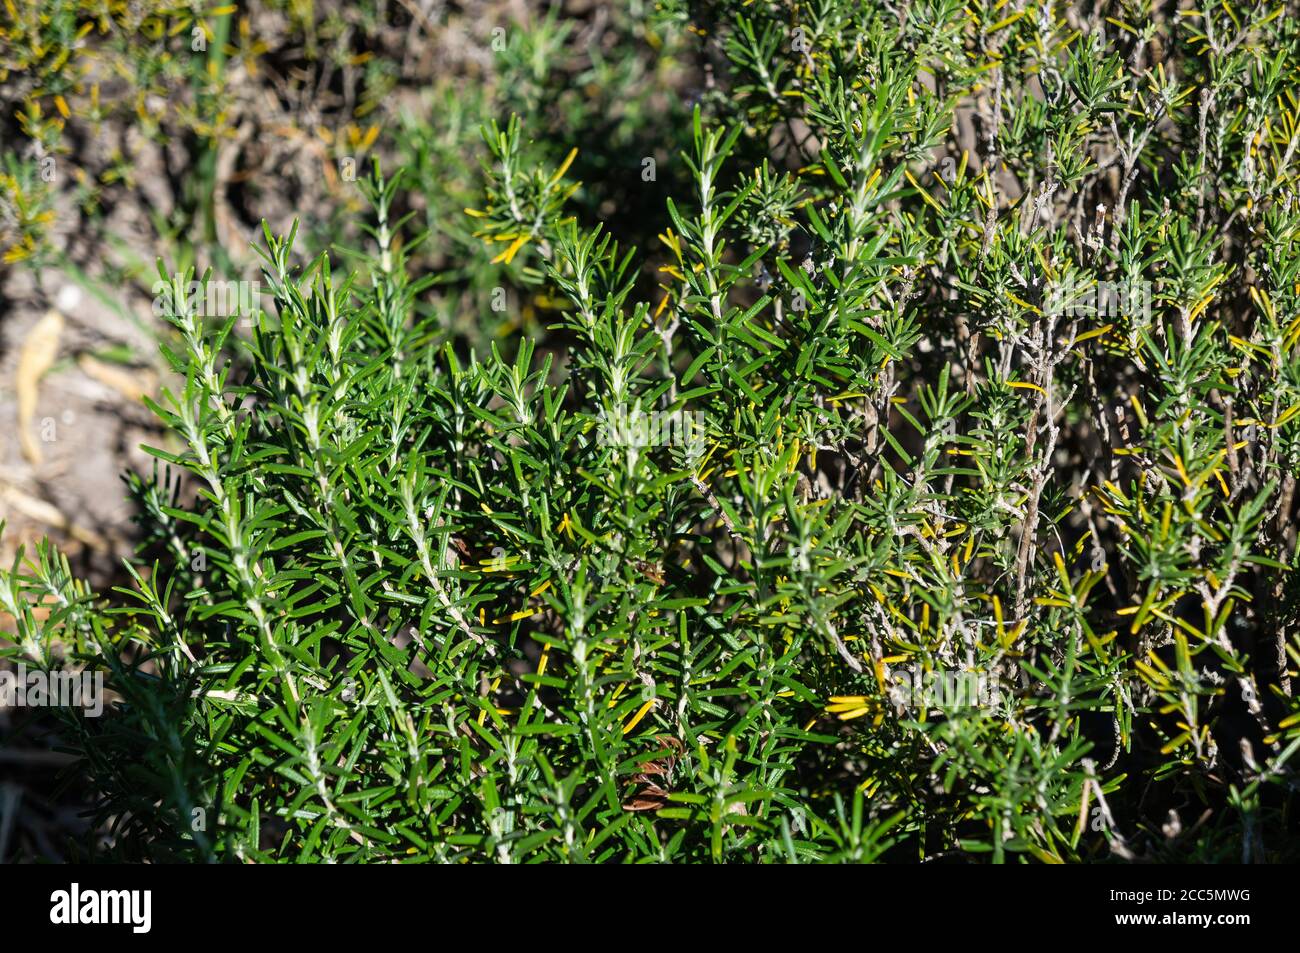 Nahaufnahme eines Salvia rosmarinus (Rosmarinus officinalis - ein holziges, ausdauerndes Kraut mit duftenden, immergrünen, nadelartigen Blättern, mediterraner Ureinwohner) Stockfoto